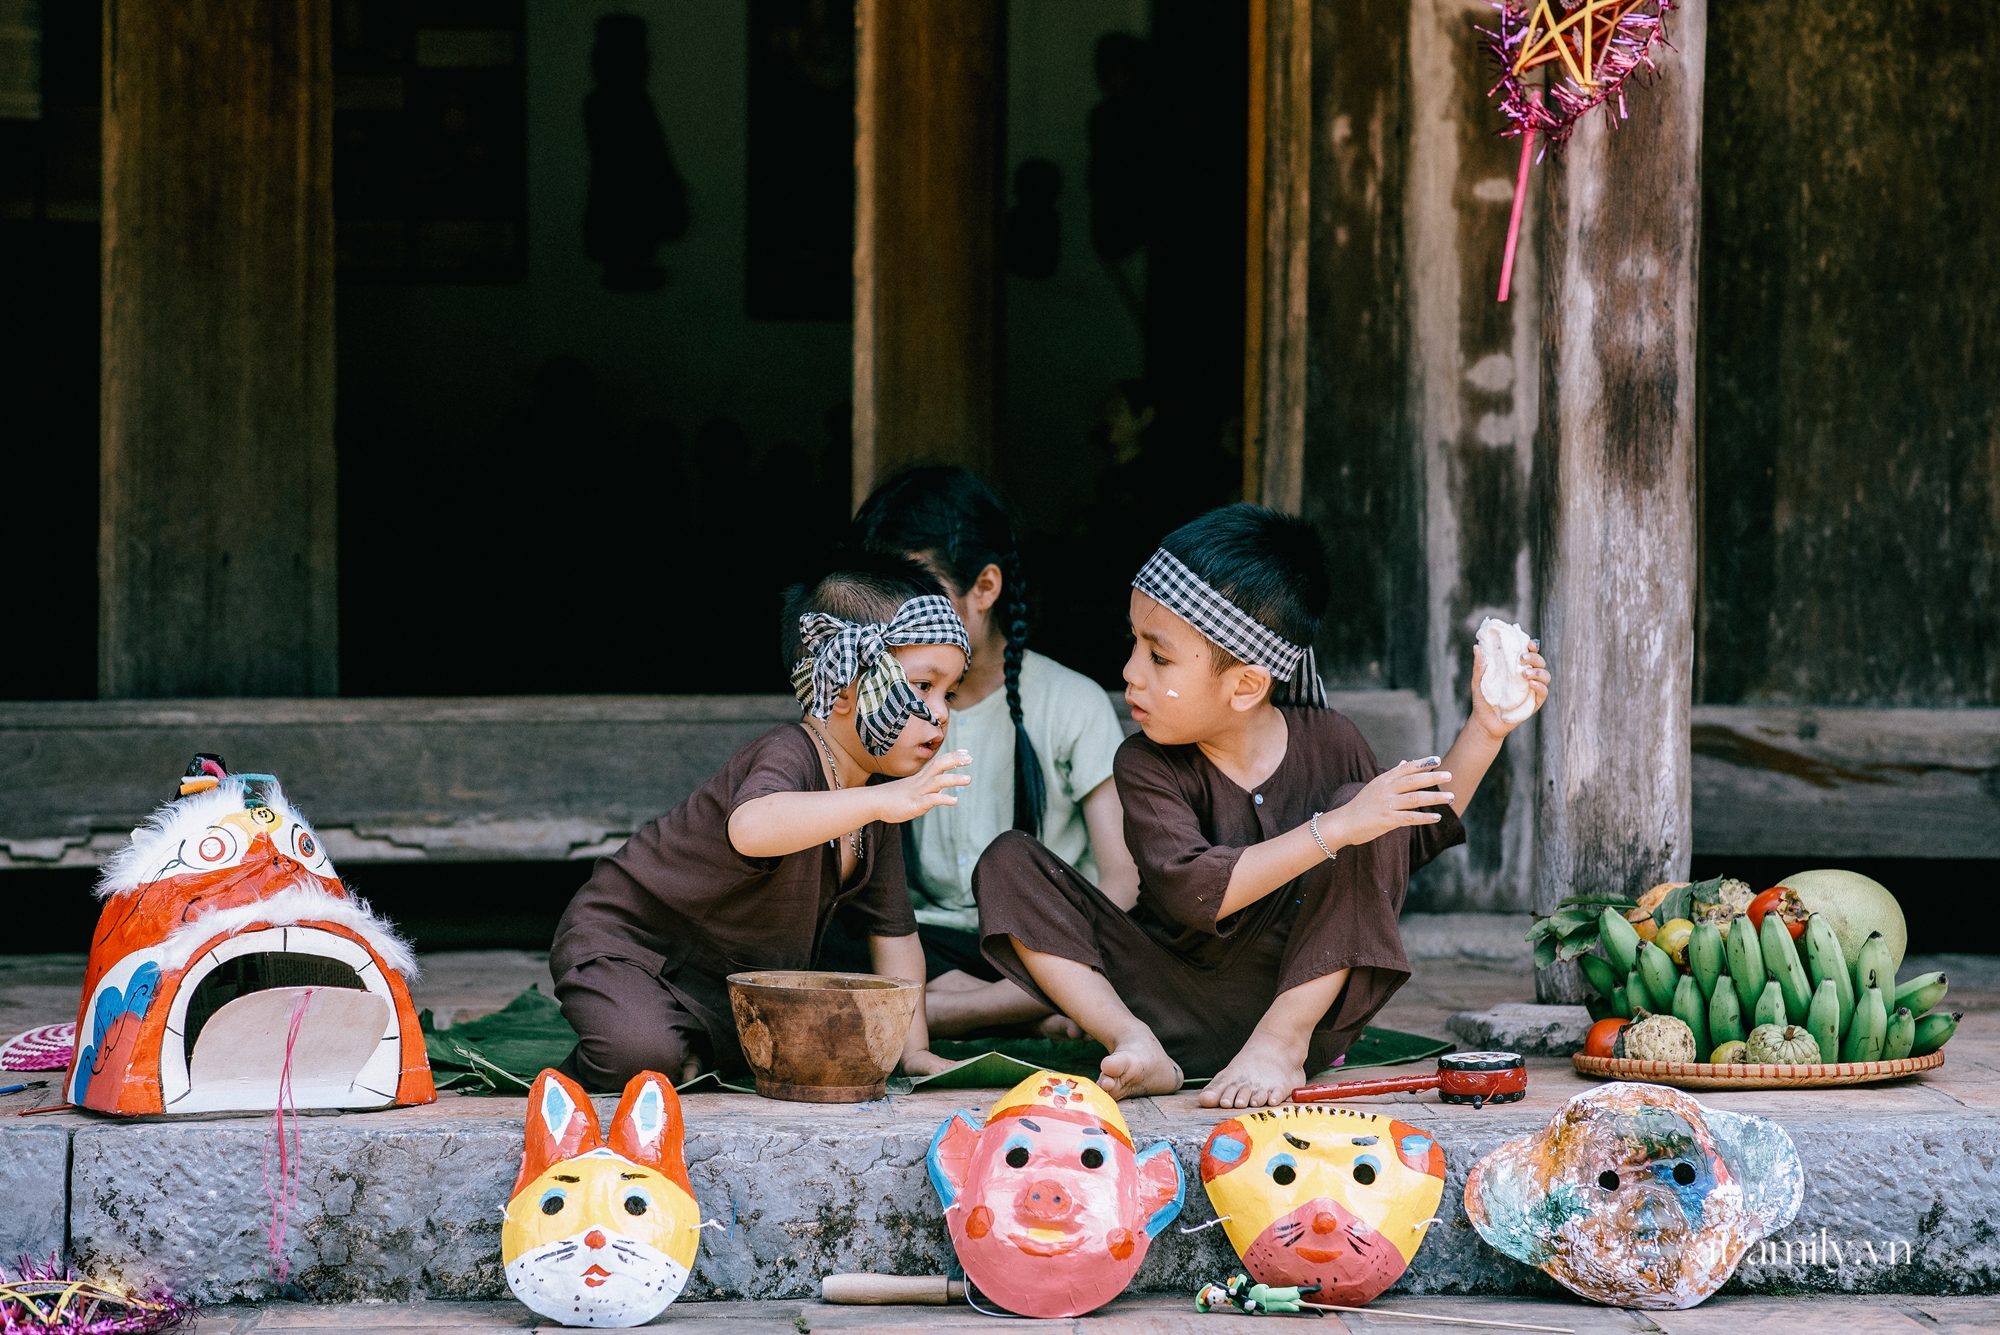 Trung thu cũ xưa ngay giữa lòng Hà Nội, nơi các em nhỏ được tận hưởng niềm vui còn bố mẹ thì được trở lại tuổi thơ chỉ với 40.000 đồng - Ảnh 5.